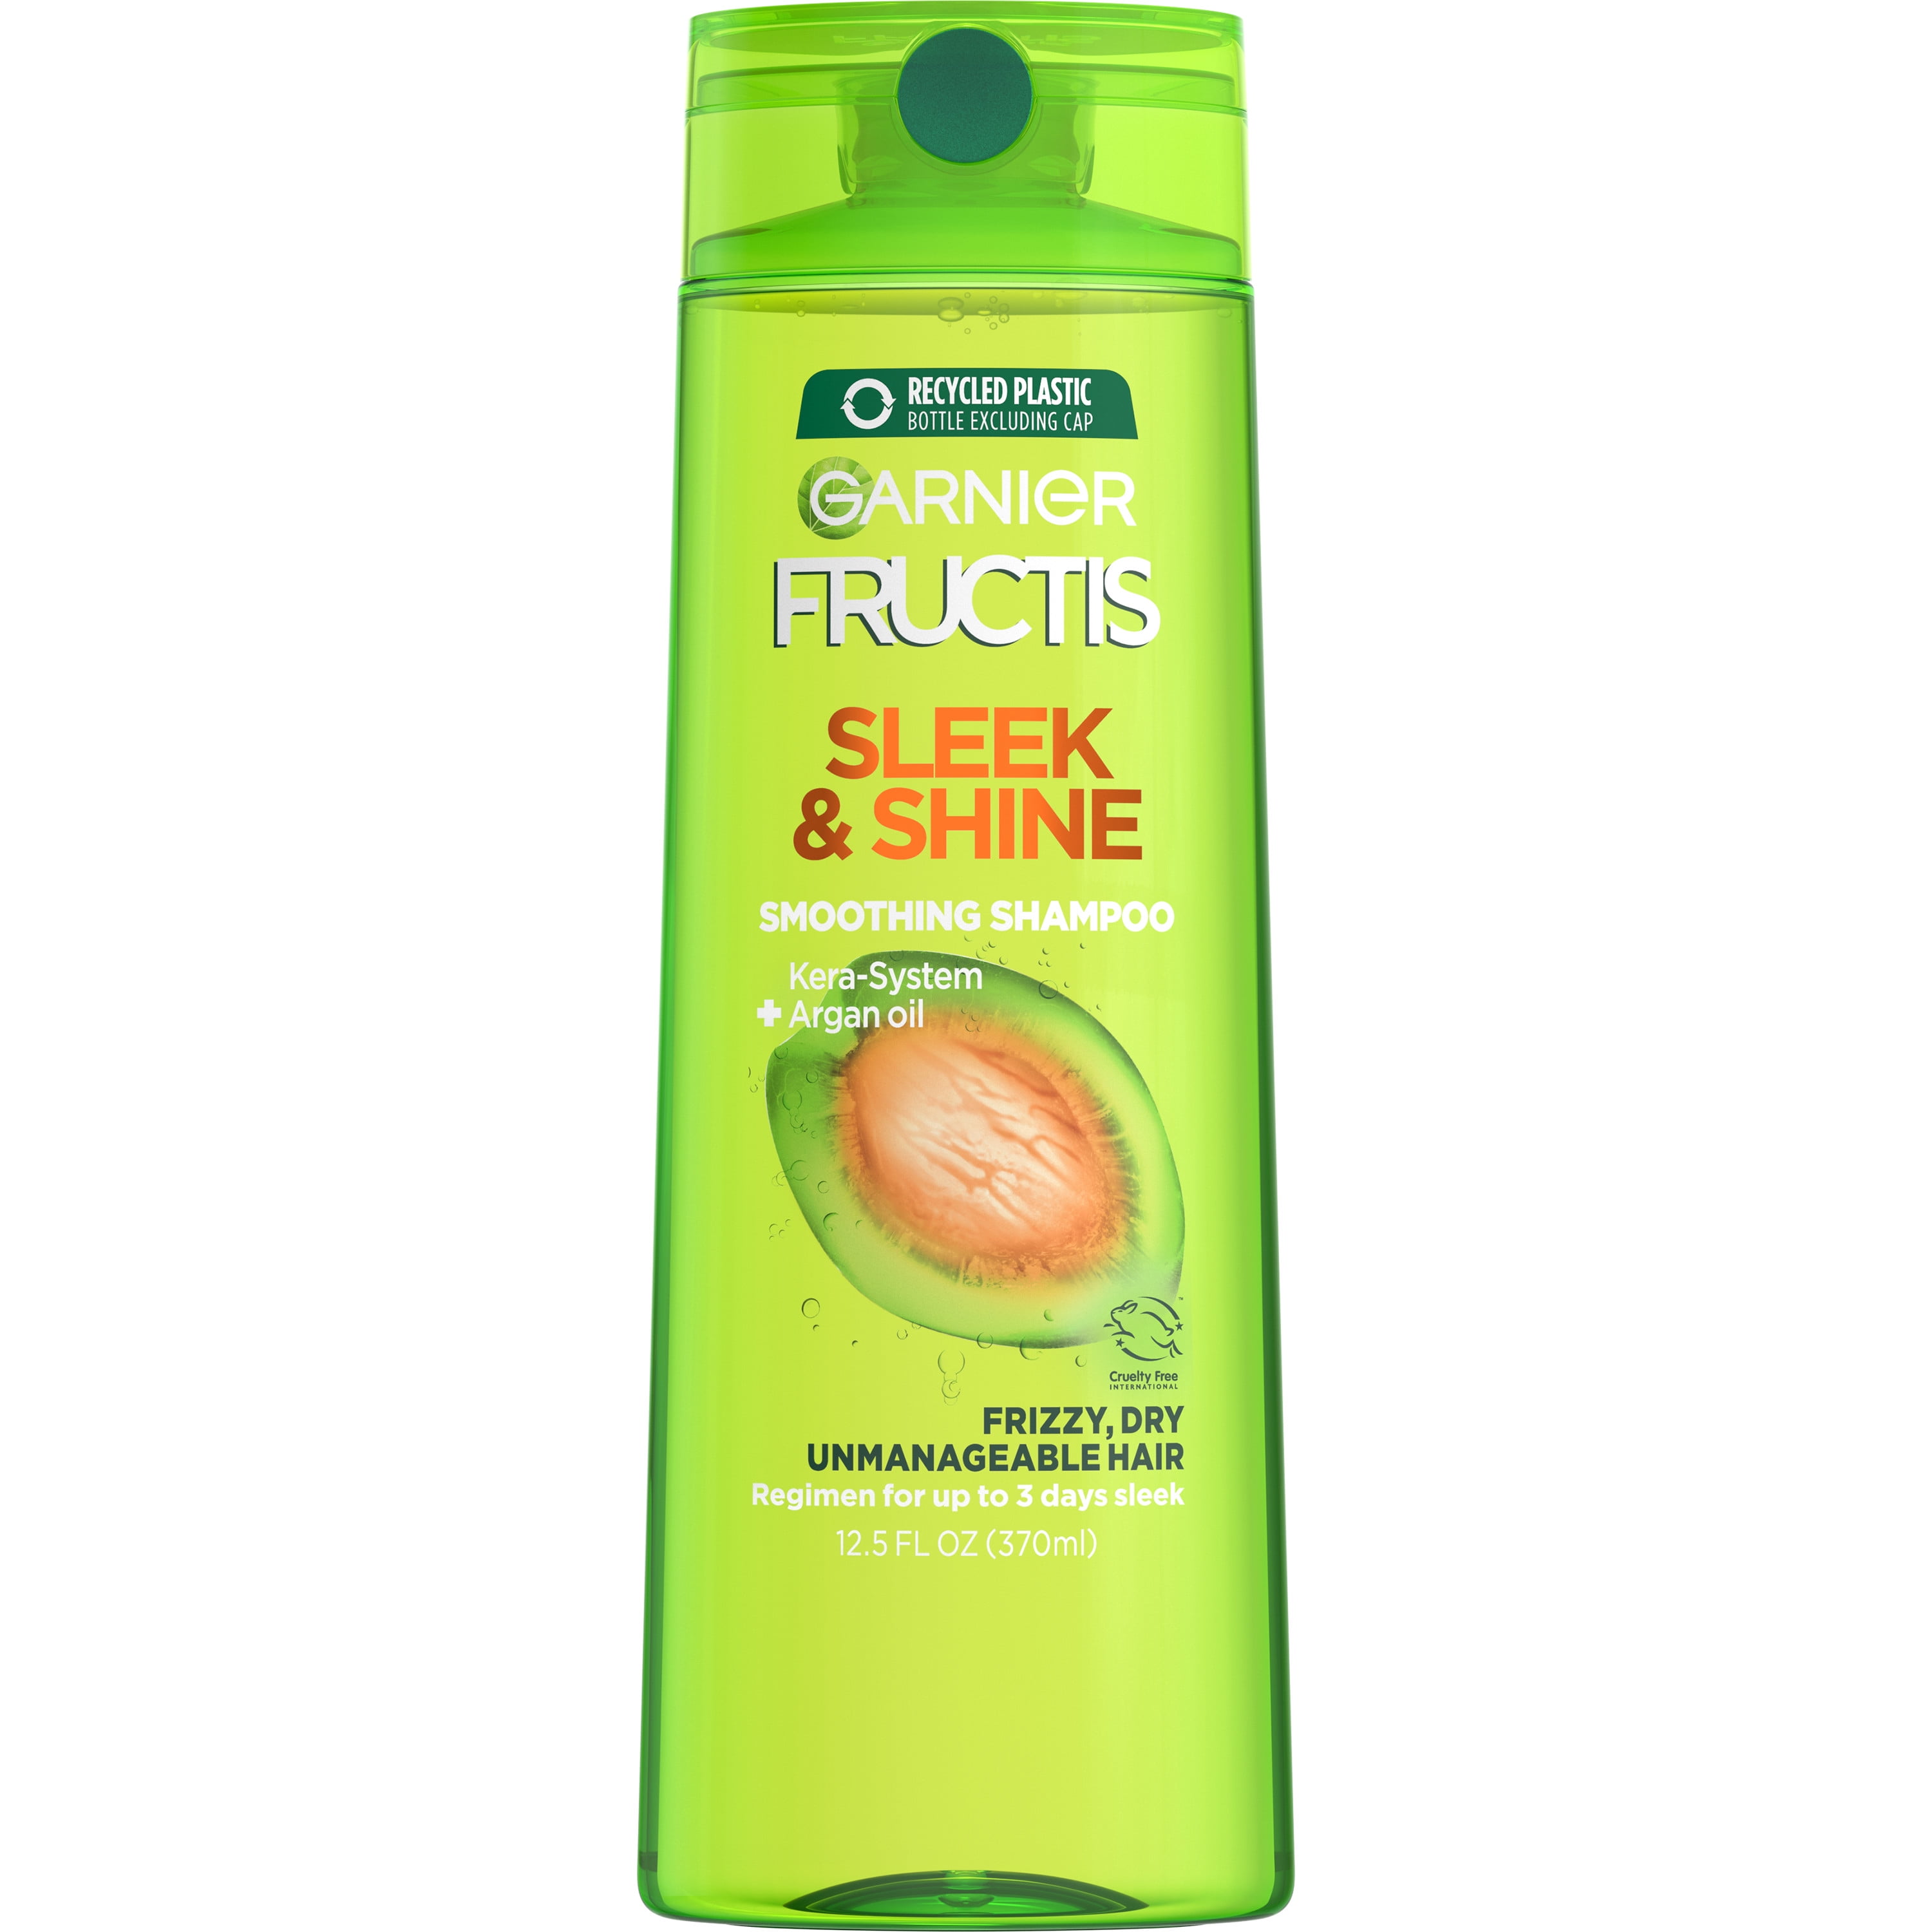 Garnier Fructis Sleek & Shine Fortifying Shampoo for Frizzy, Dry Hair, 12.5 fl oz